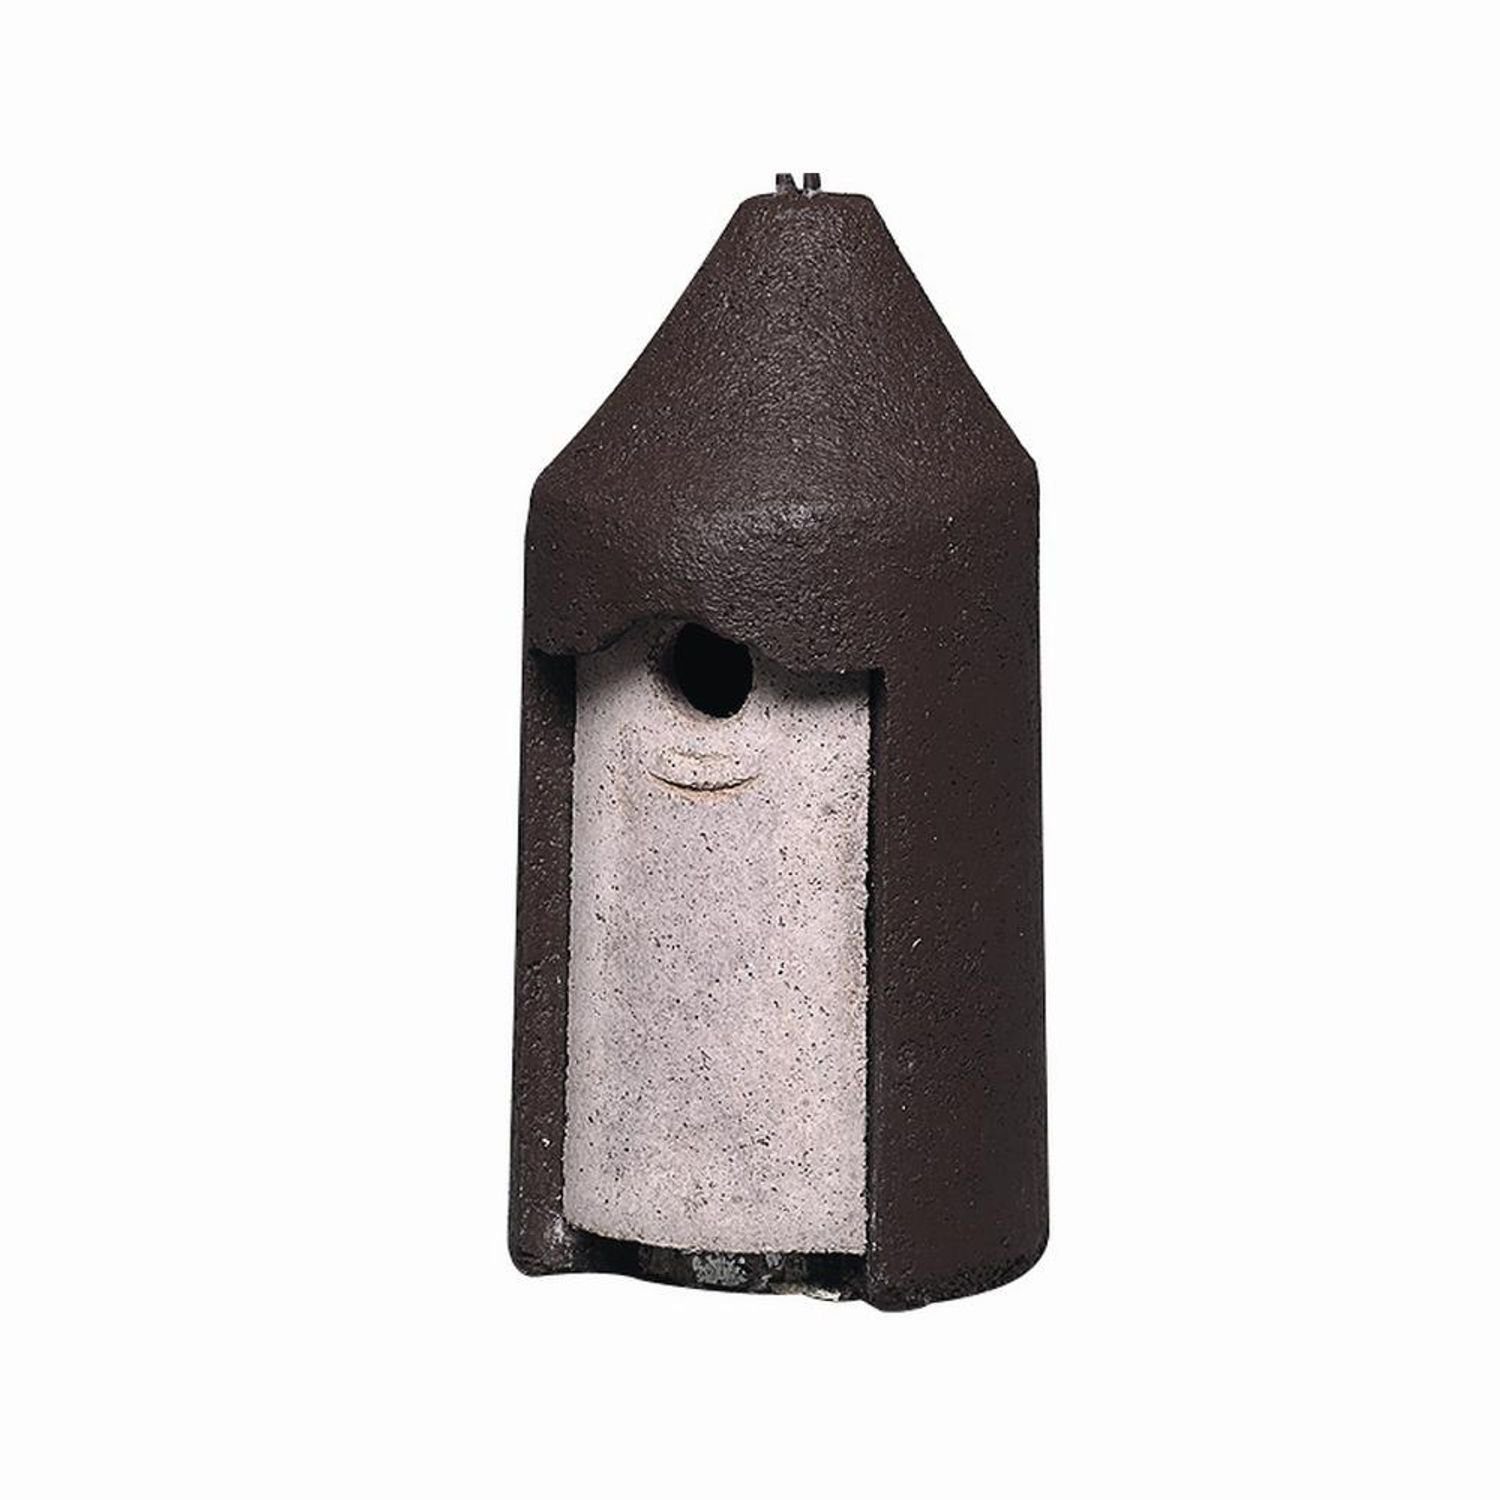 Schwegler Vogelhaus Nisthöhle 26mm für Kleinvögel zur freischwebenden Aufhängung